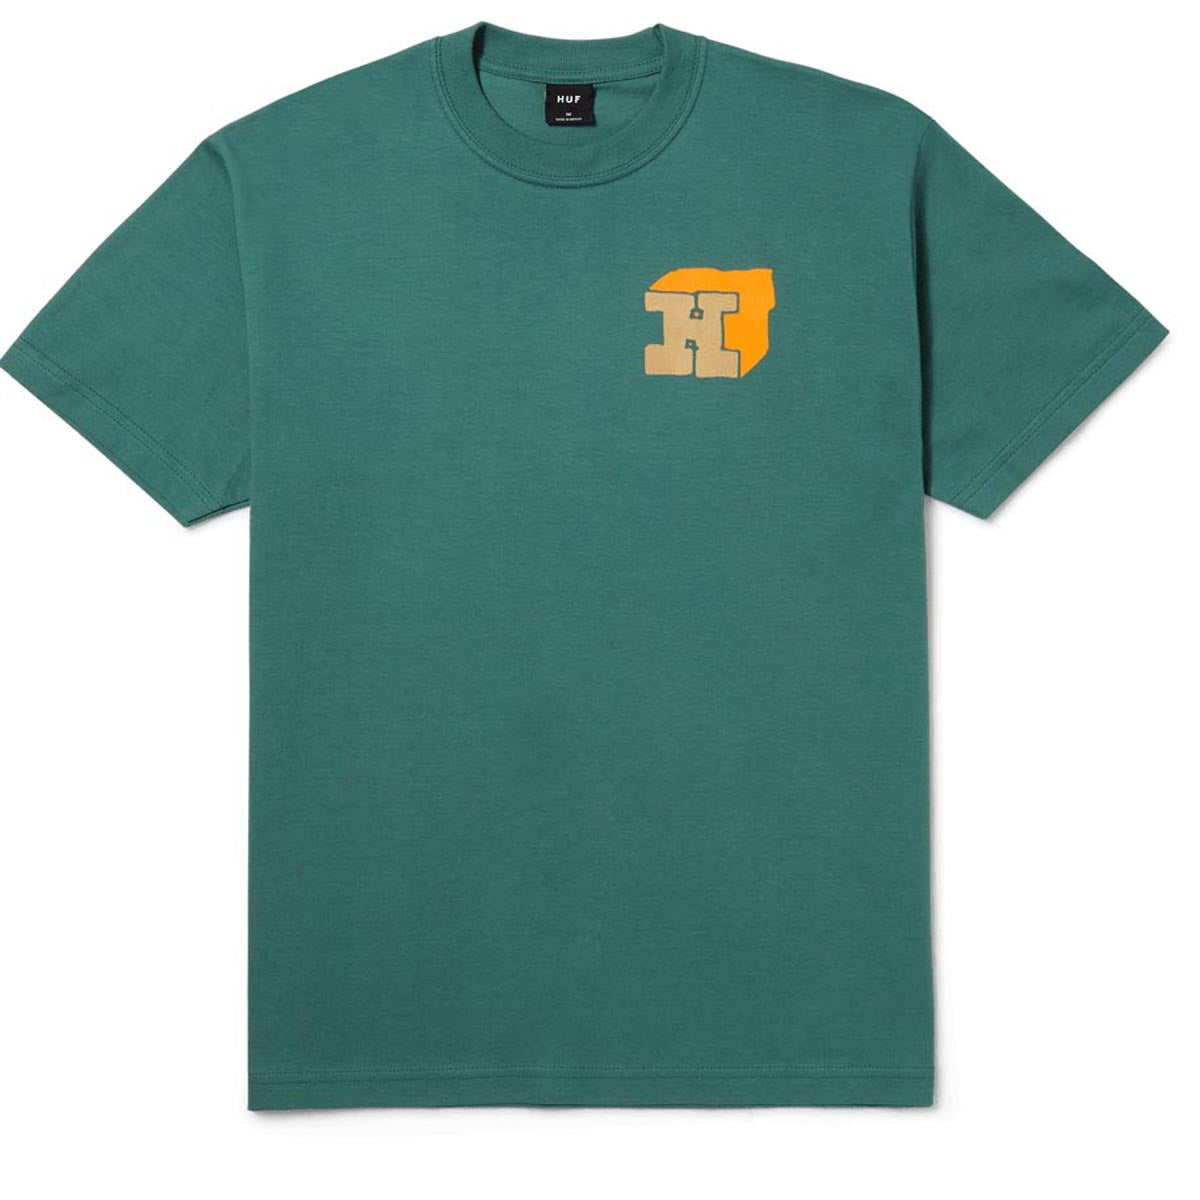 HUF Morex T-Shirt - Pine image 1